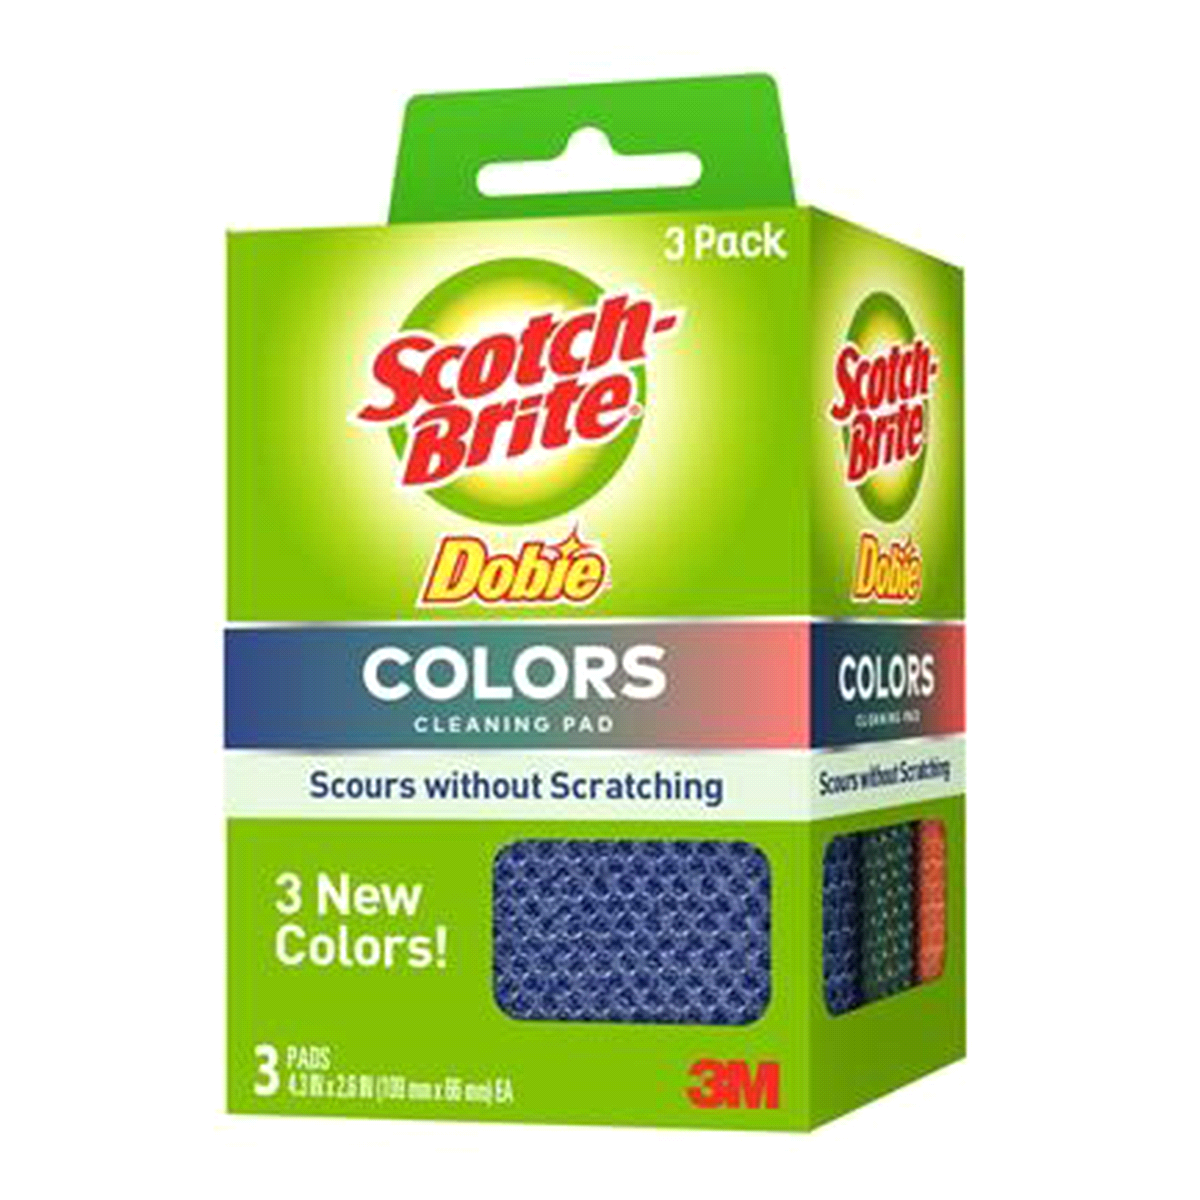 Scotch Brite Dobie Pads Colors 3 pack